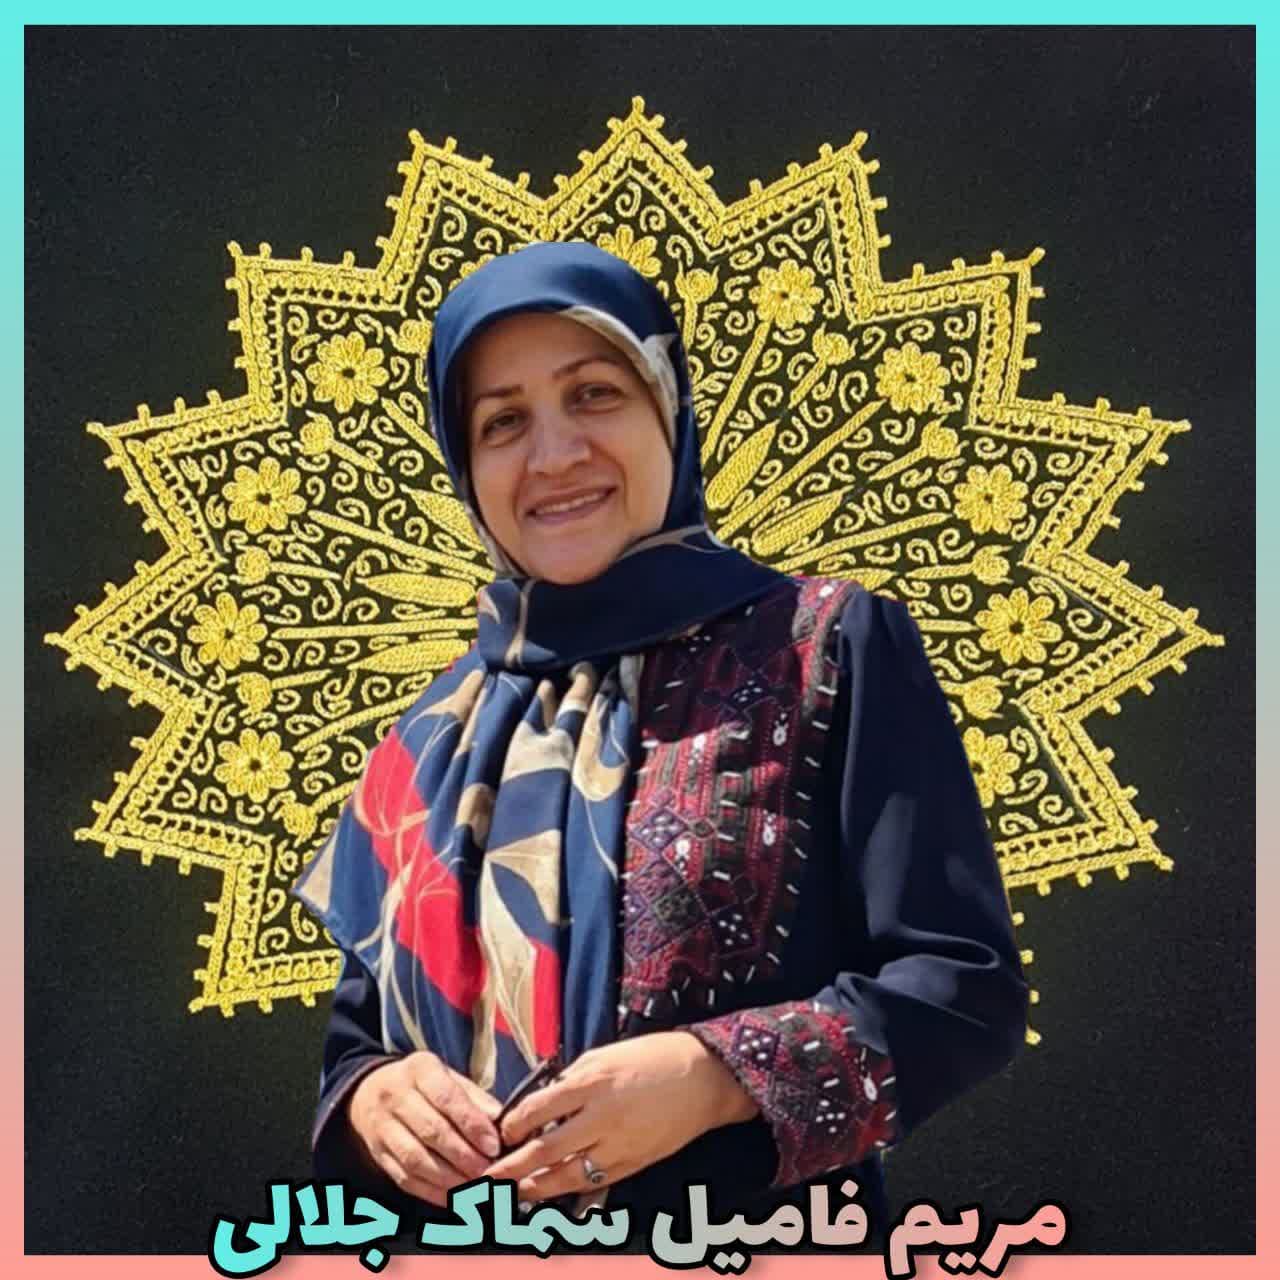 سرکار خانم مریم فامیل سماک جمالی 